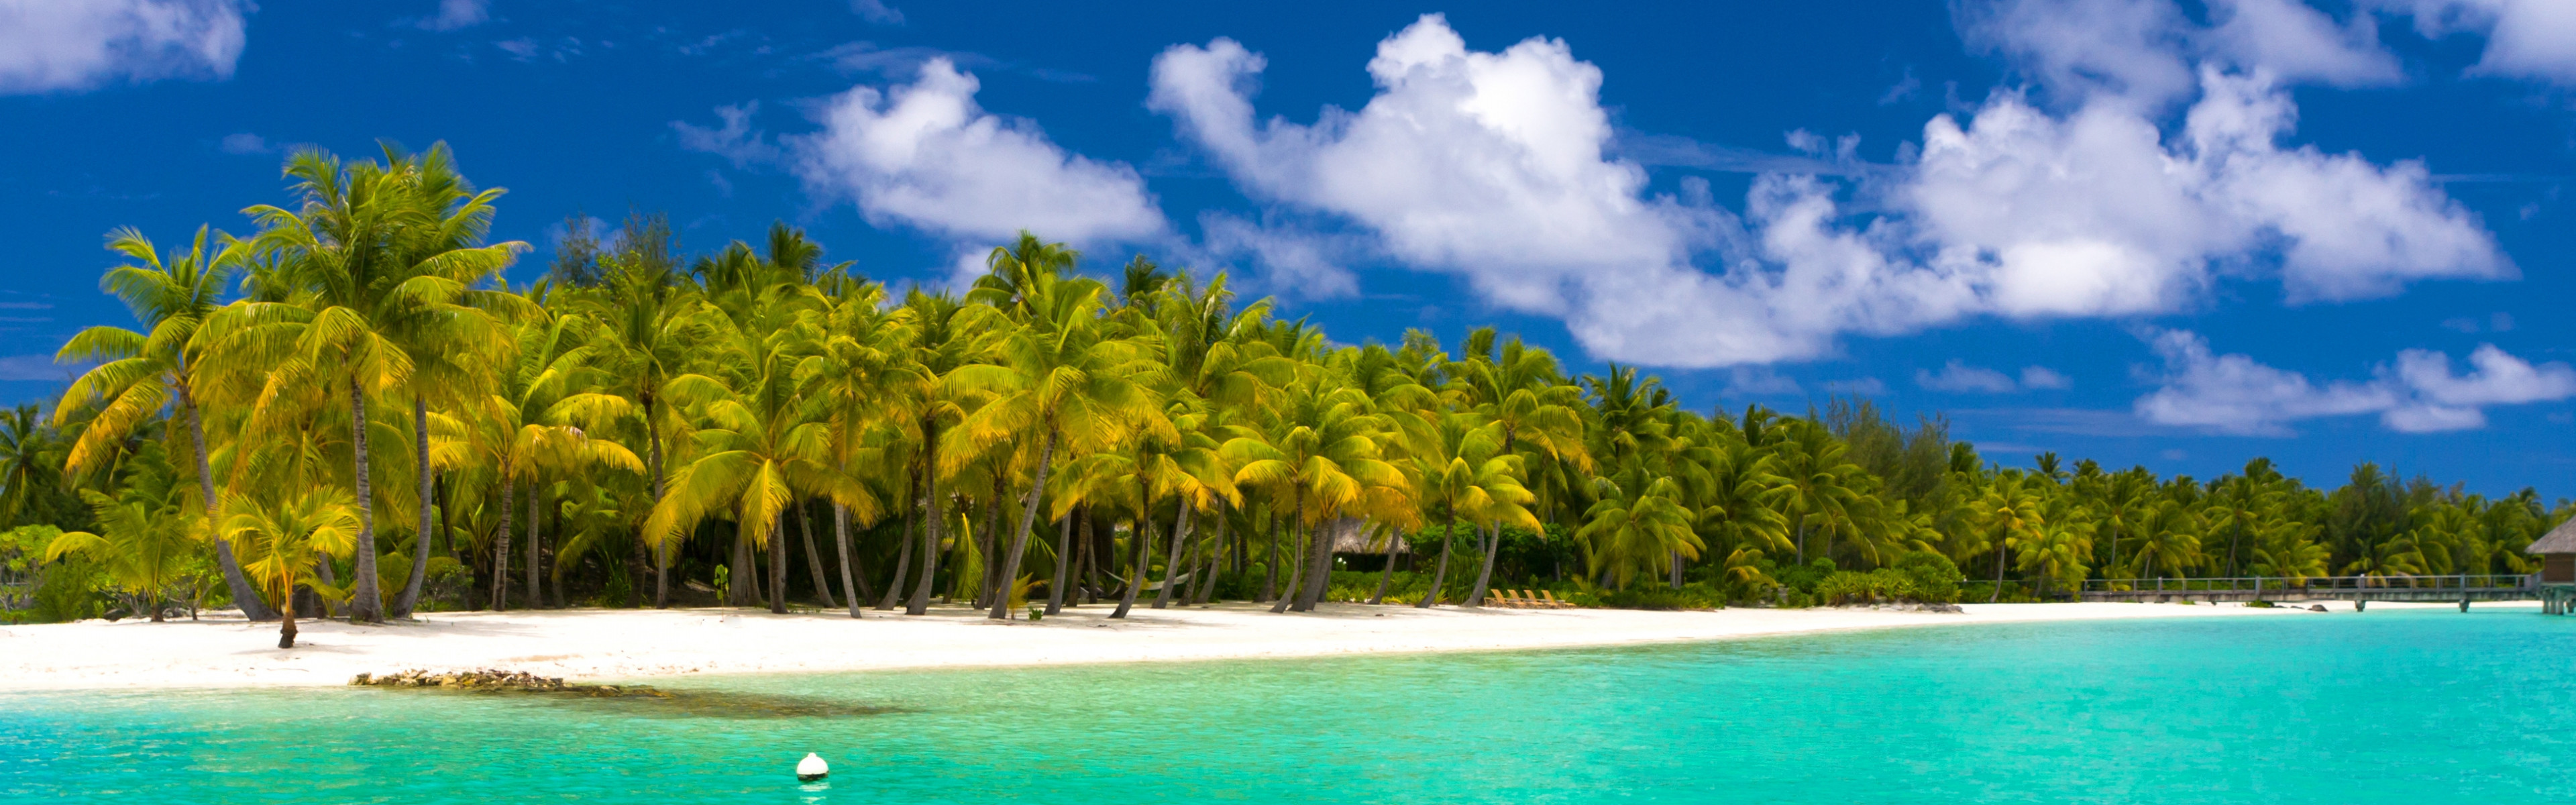 3840x1200  Wallpaper summer, maldives, tropical, beach, palm trees